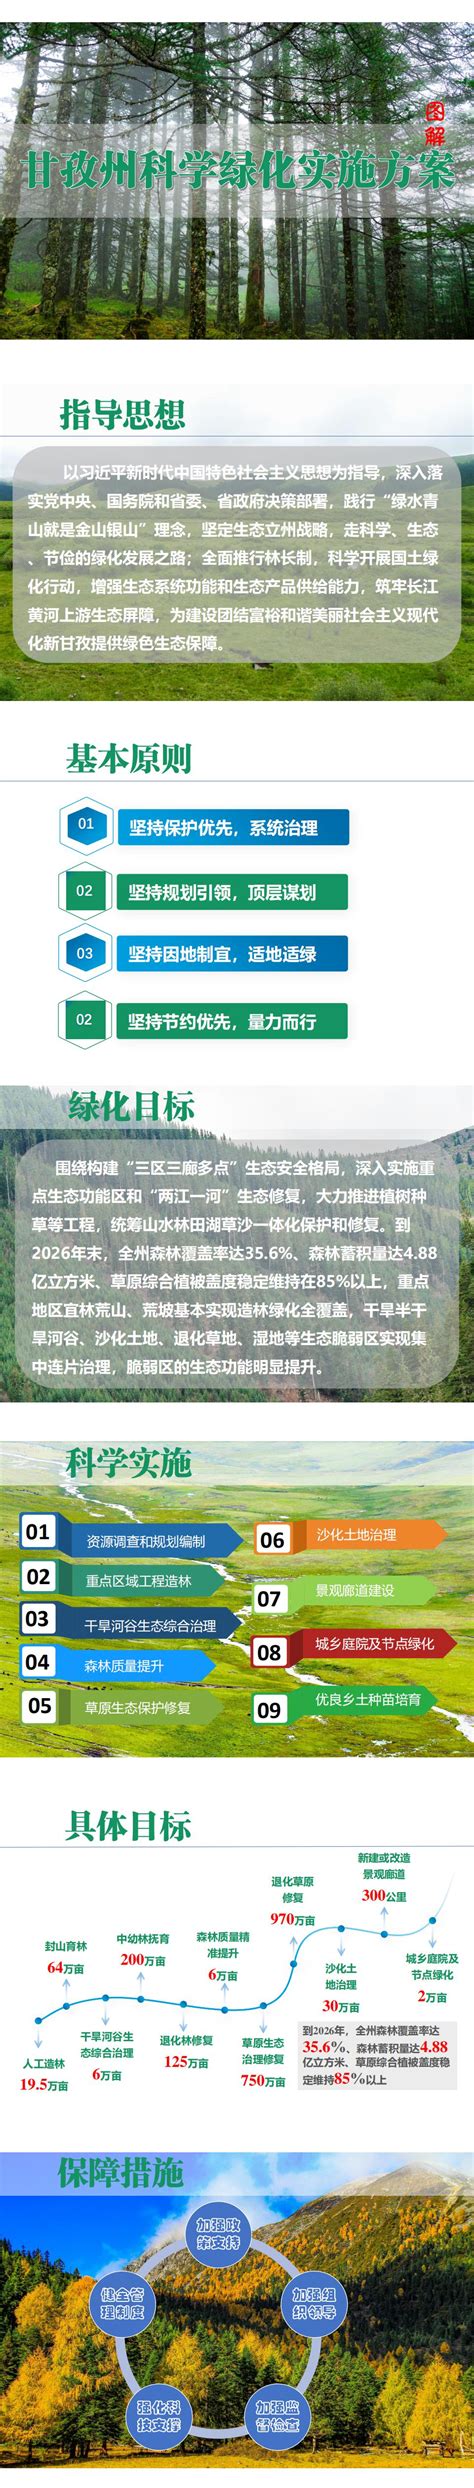 《甘孜州科学绿化实施方案》图文解读 - 甘孜藏族自治州人民政府网站